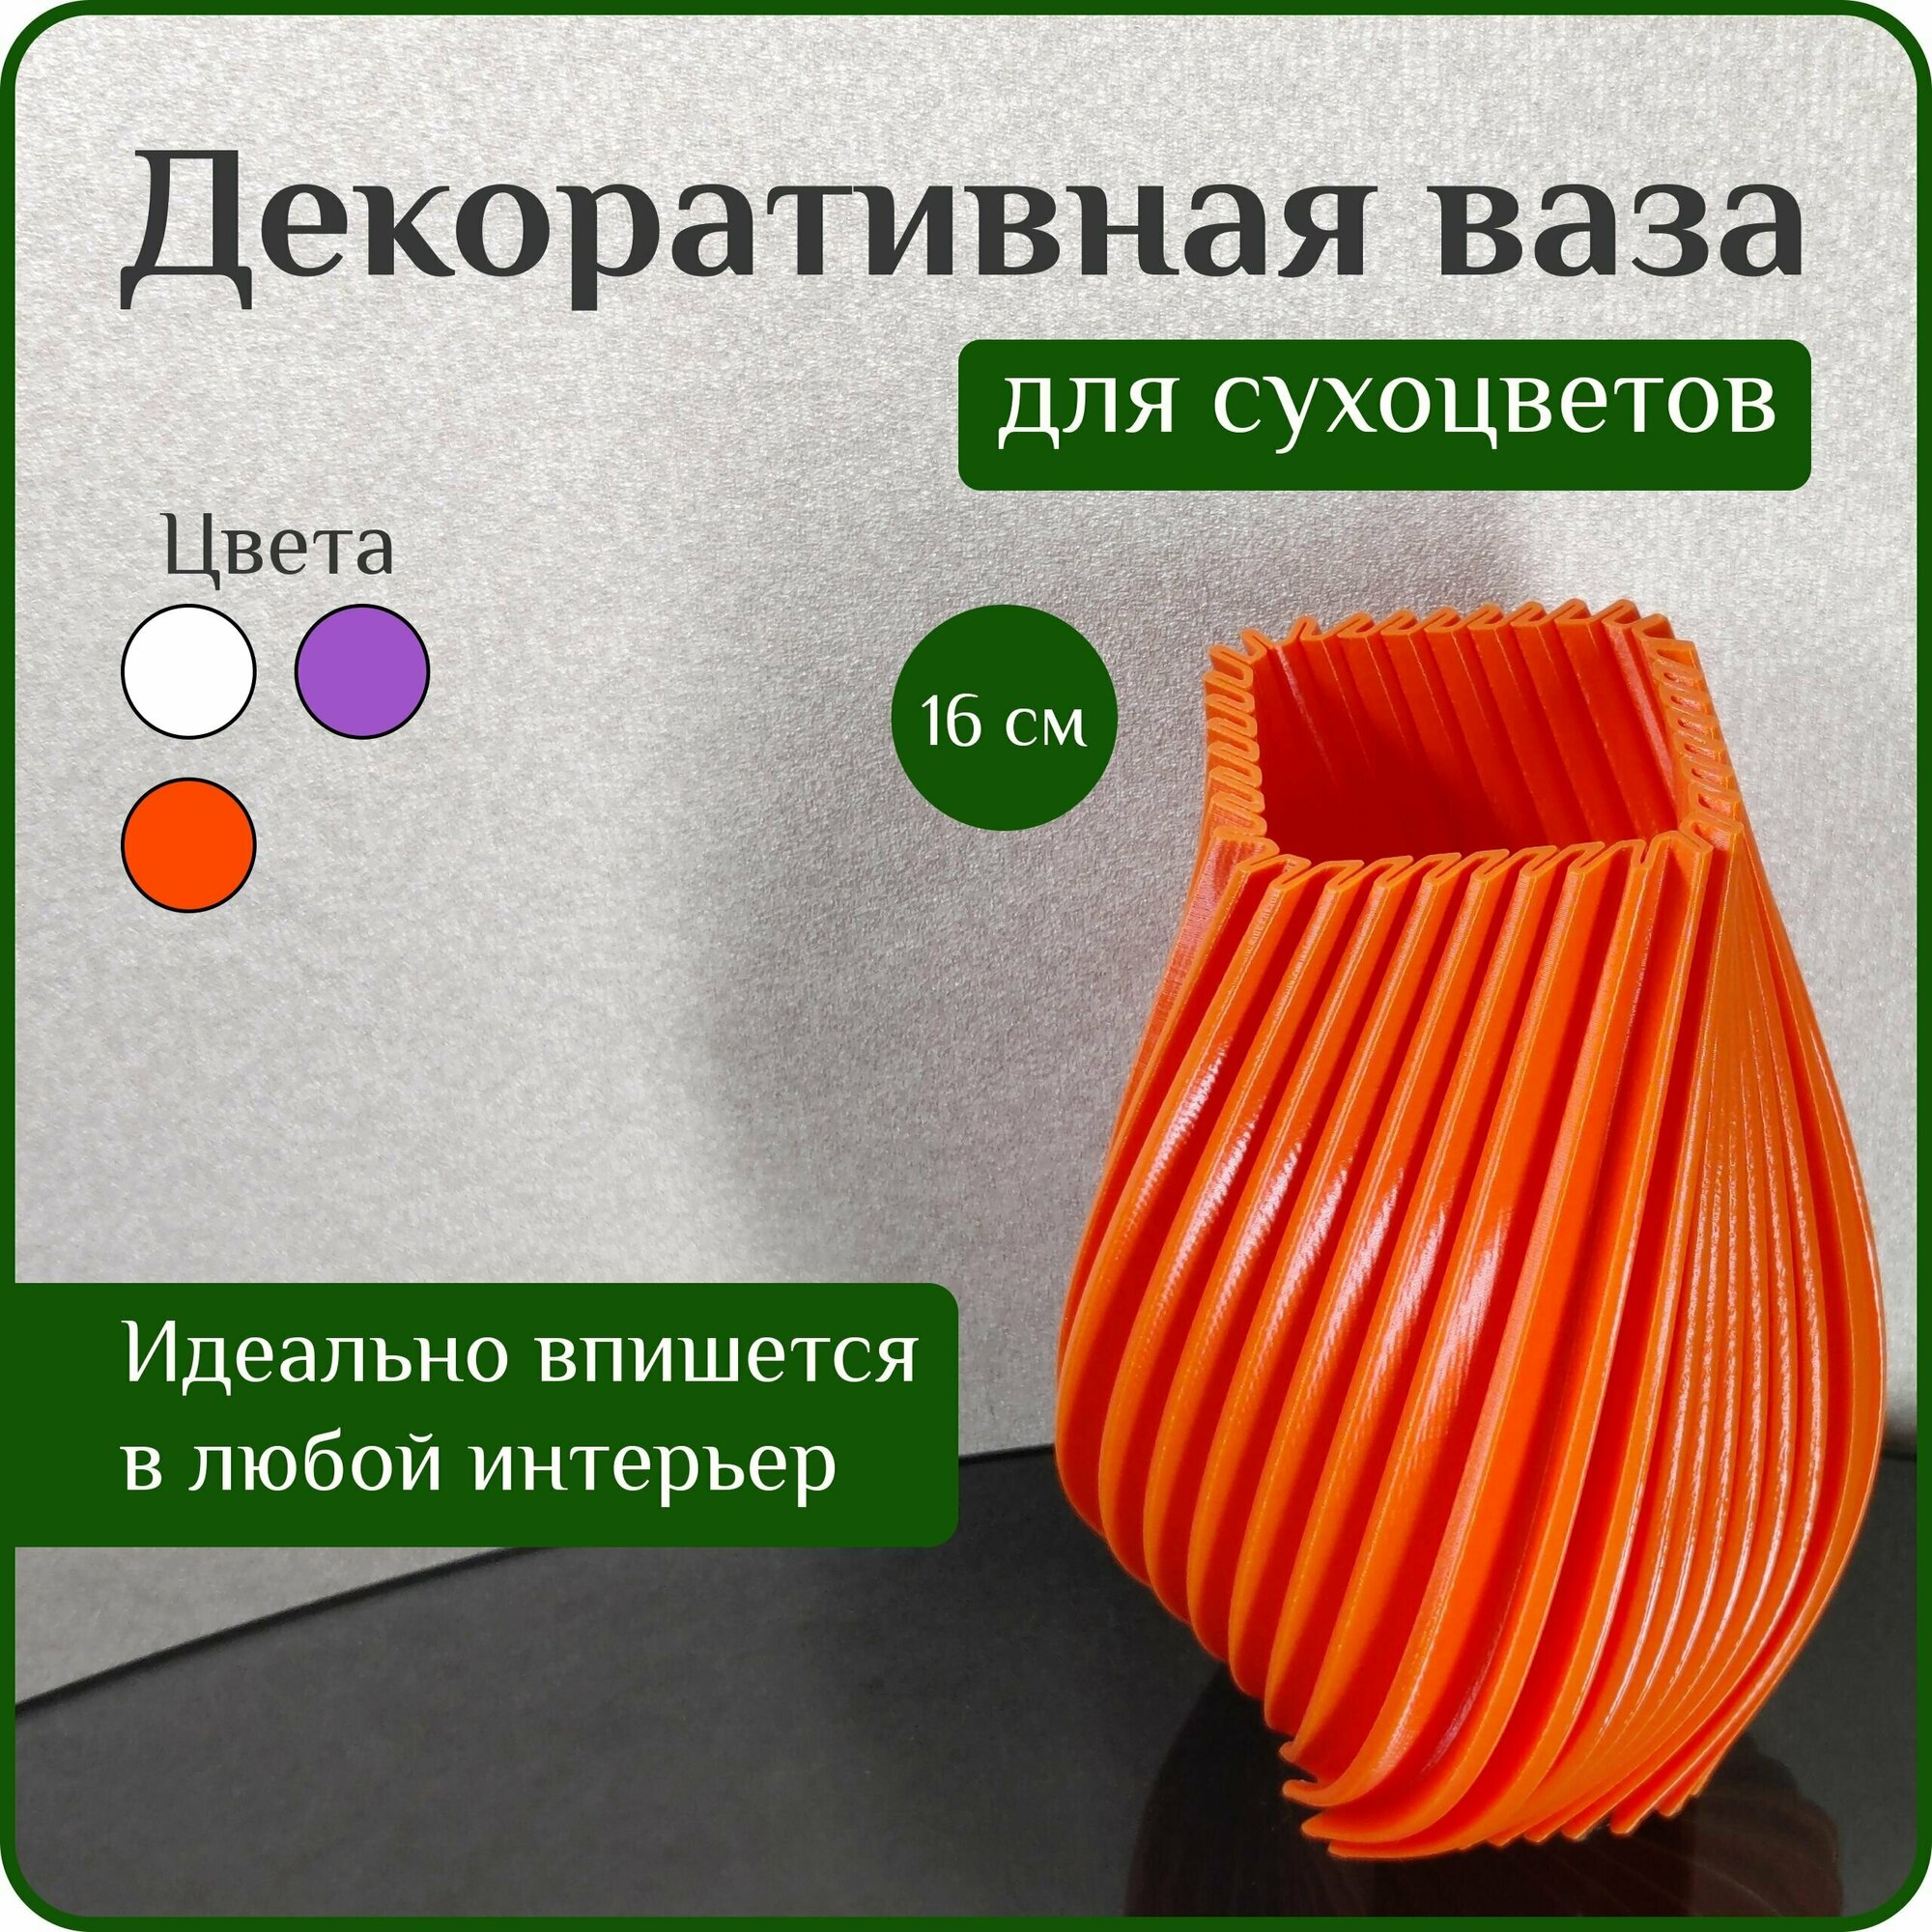 Ваза декоративная интерьерная "Оранжевая", ваза для сухоцветов оранжевая, ваза для декора, 16 см, пластик